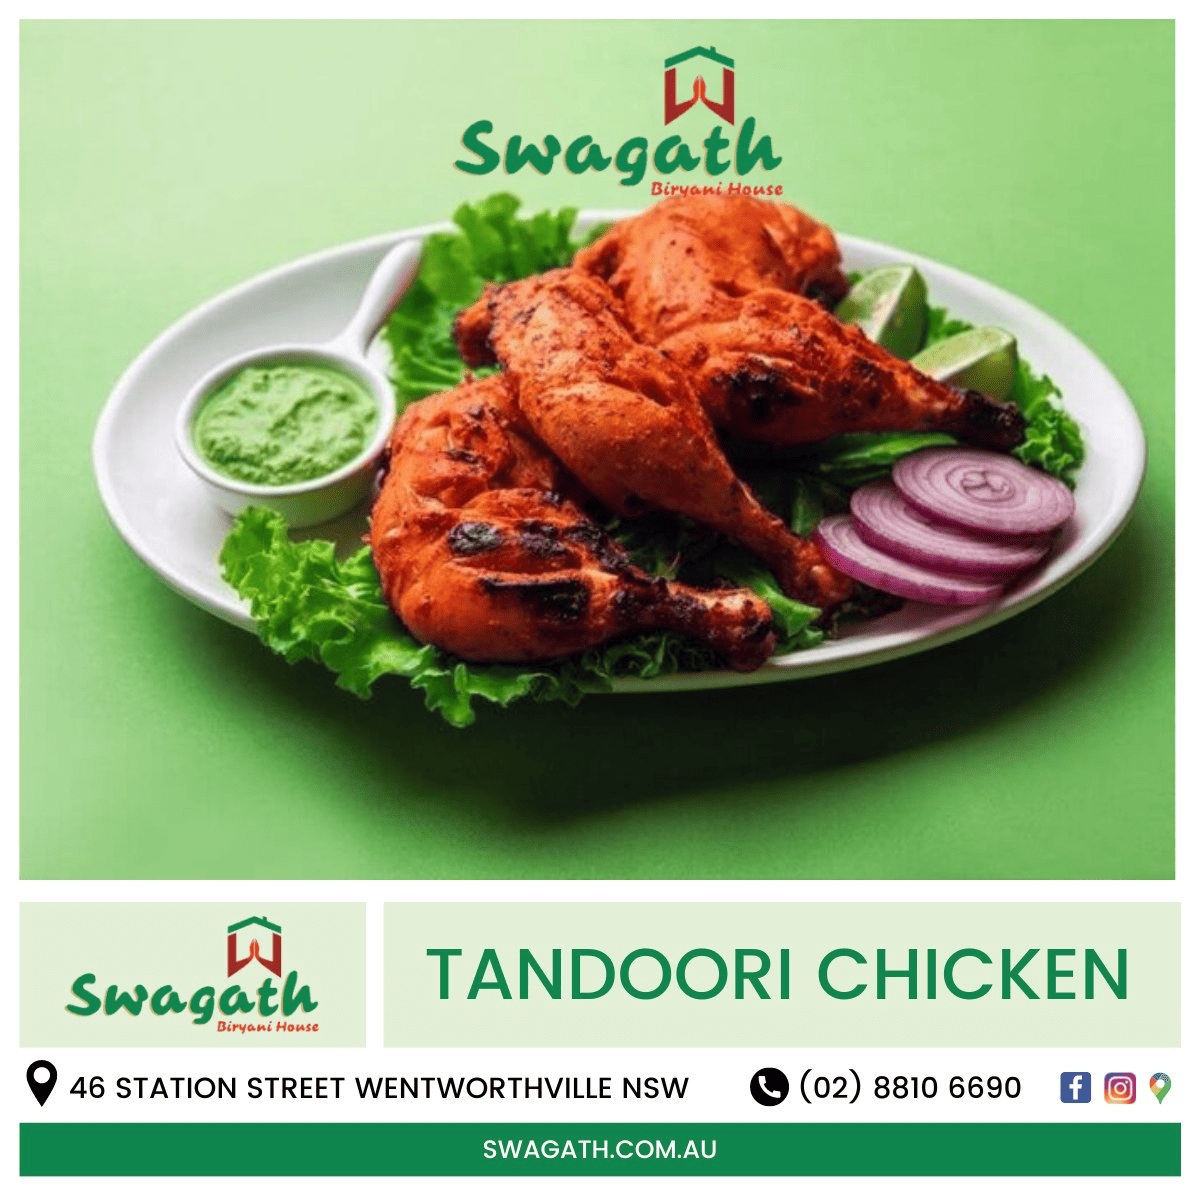 Tandoori chicken: A sizzling Tandoor specialty dish